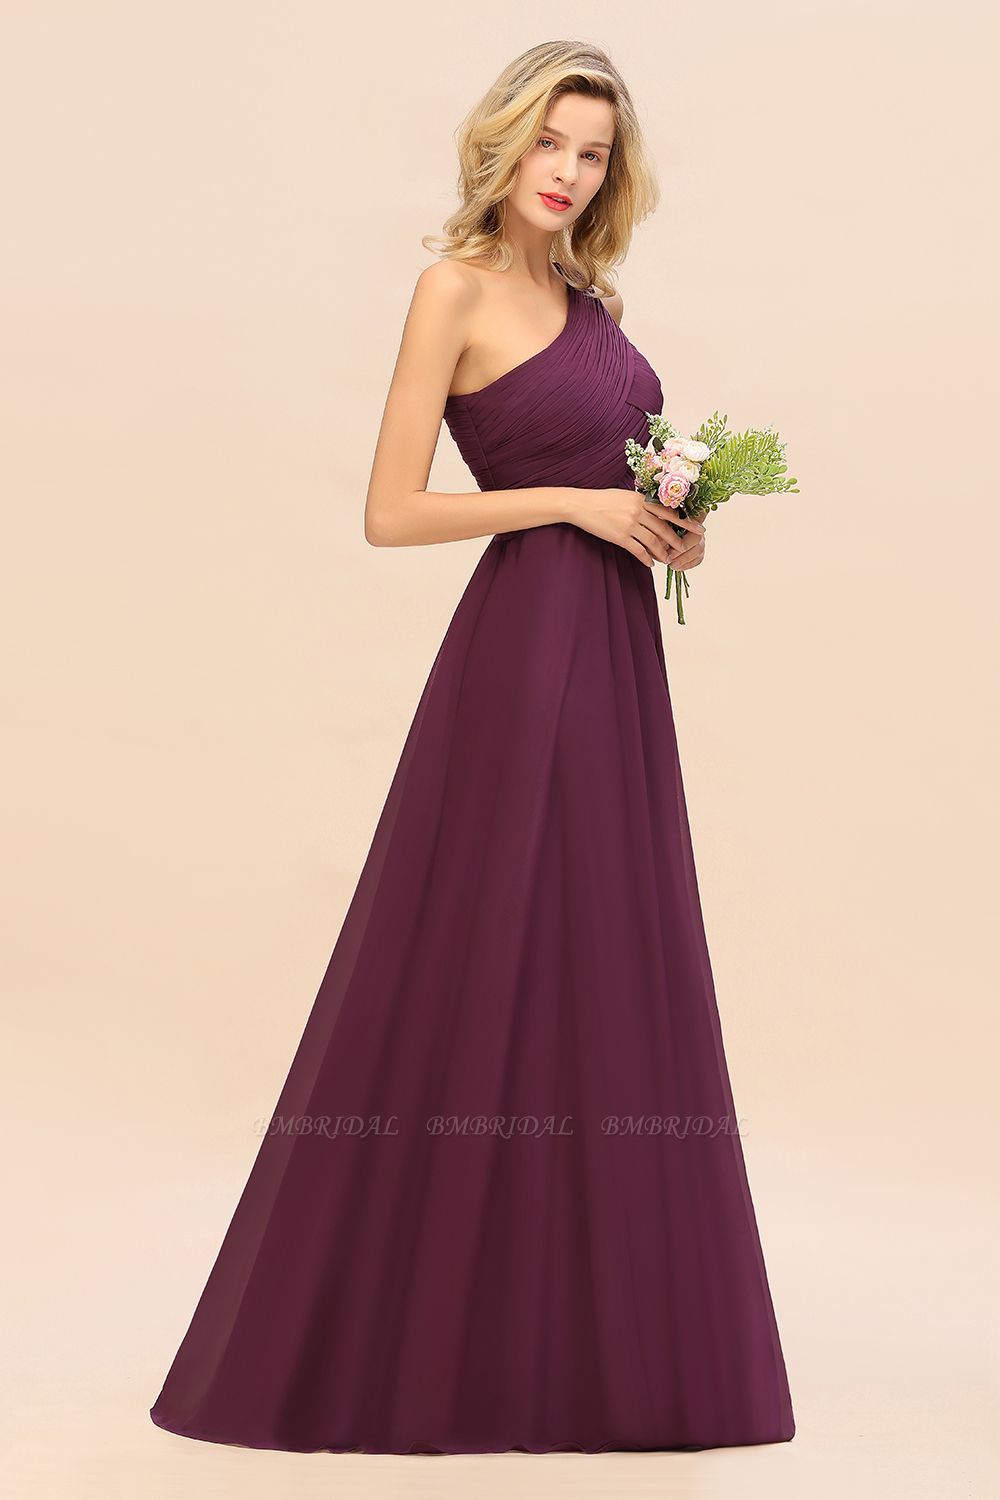 Elegante Rüschen One Shoulder Prom Kleider | A-Line ärmellose Abendkleider